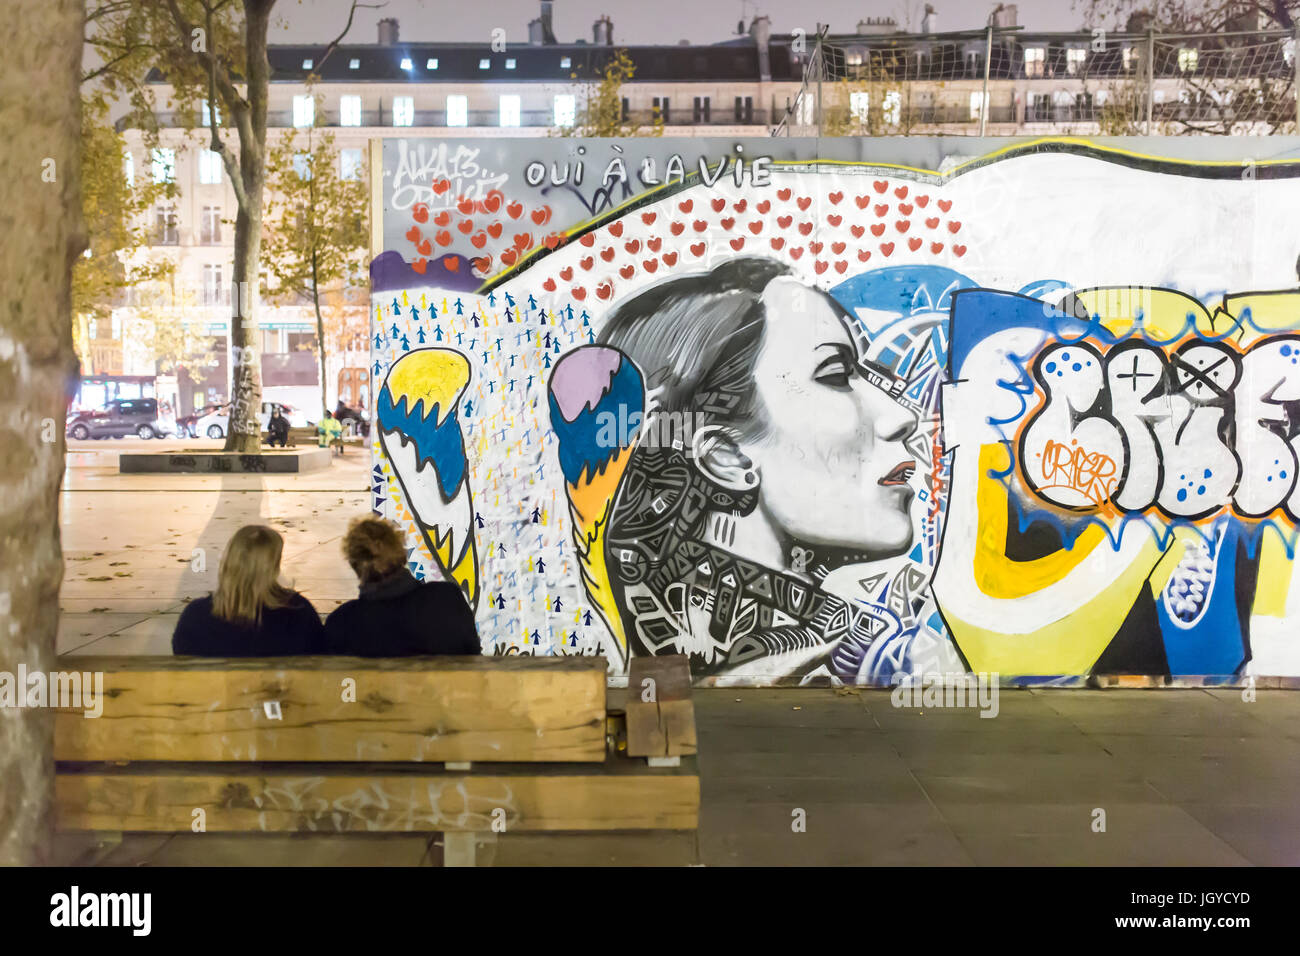 2 Personen auf einer Bank Place de la Republique vor einem Graff. Hommage an die Opfer der Terroranschläge am 13. November. Stockfoto